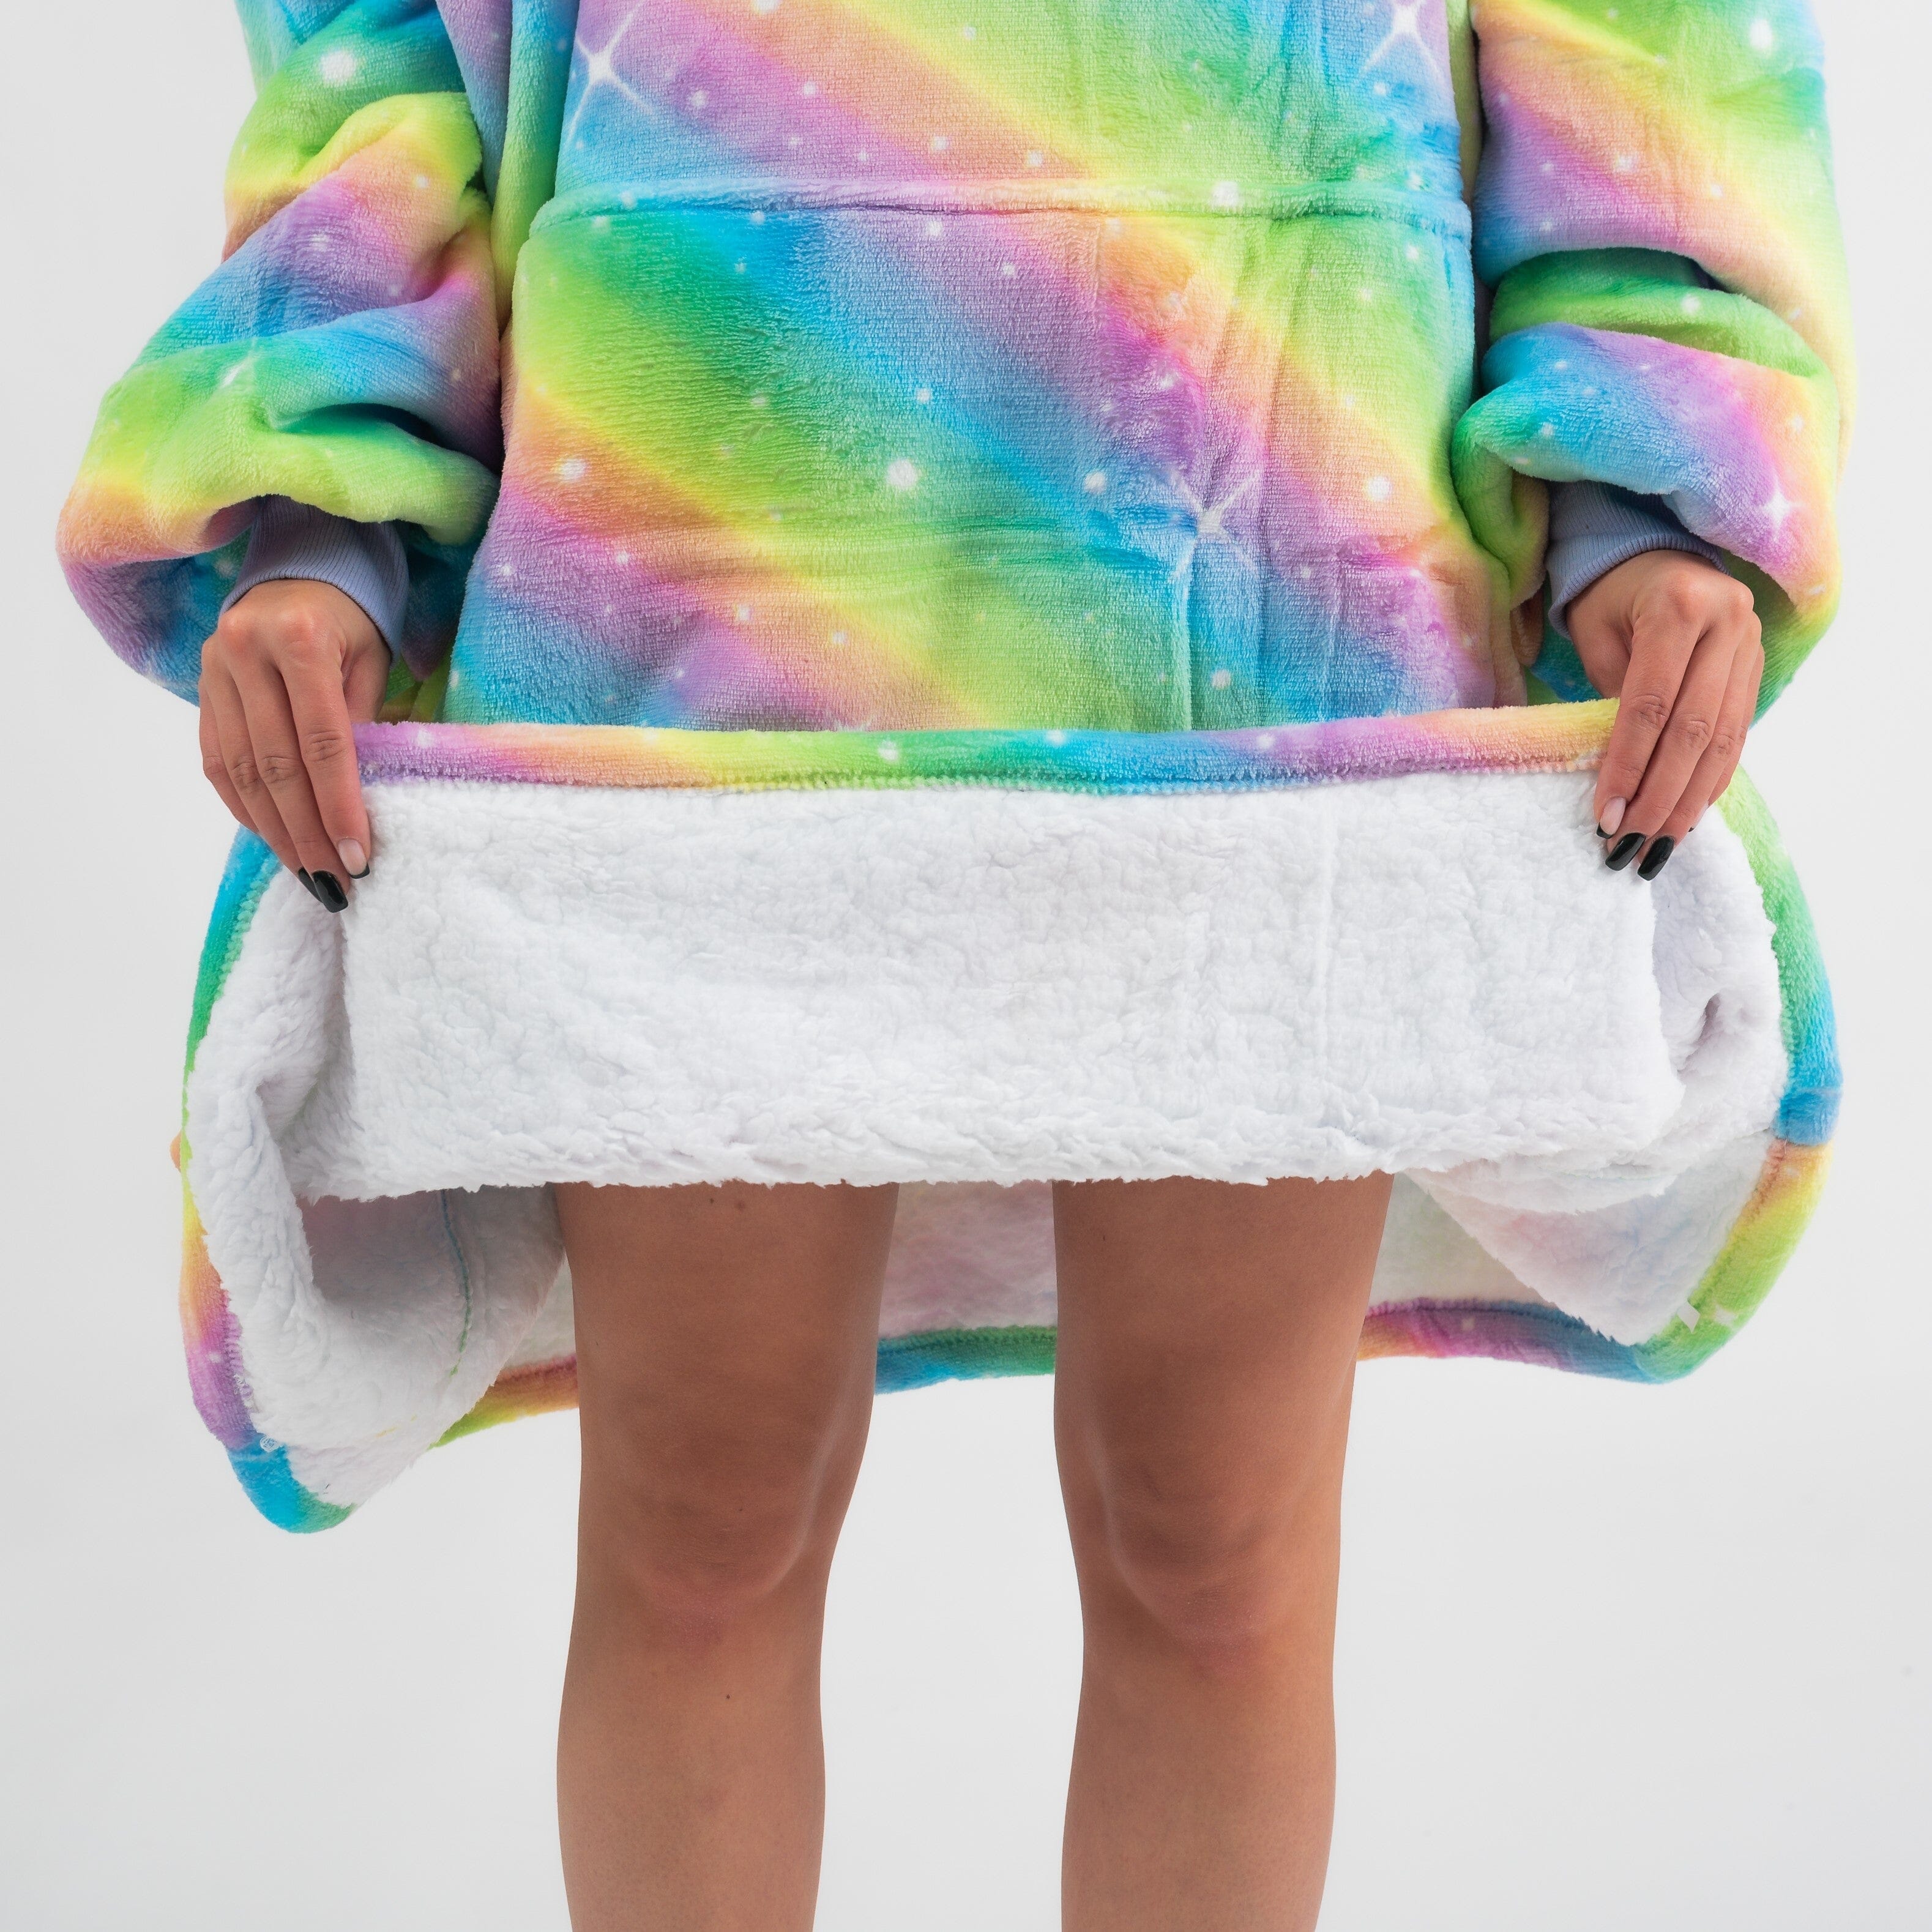 Pijama Cobertor Kawaii Arco-Iris GatoGeek 